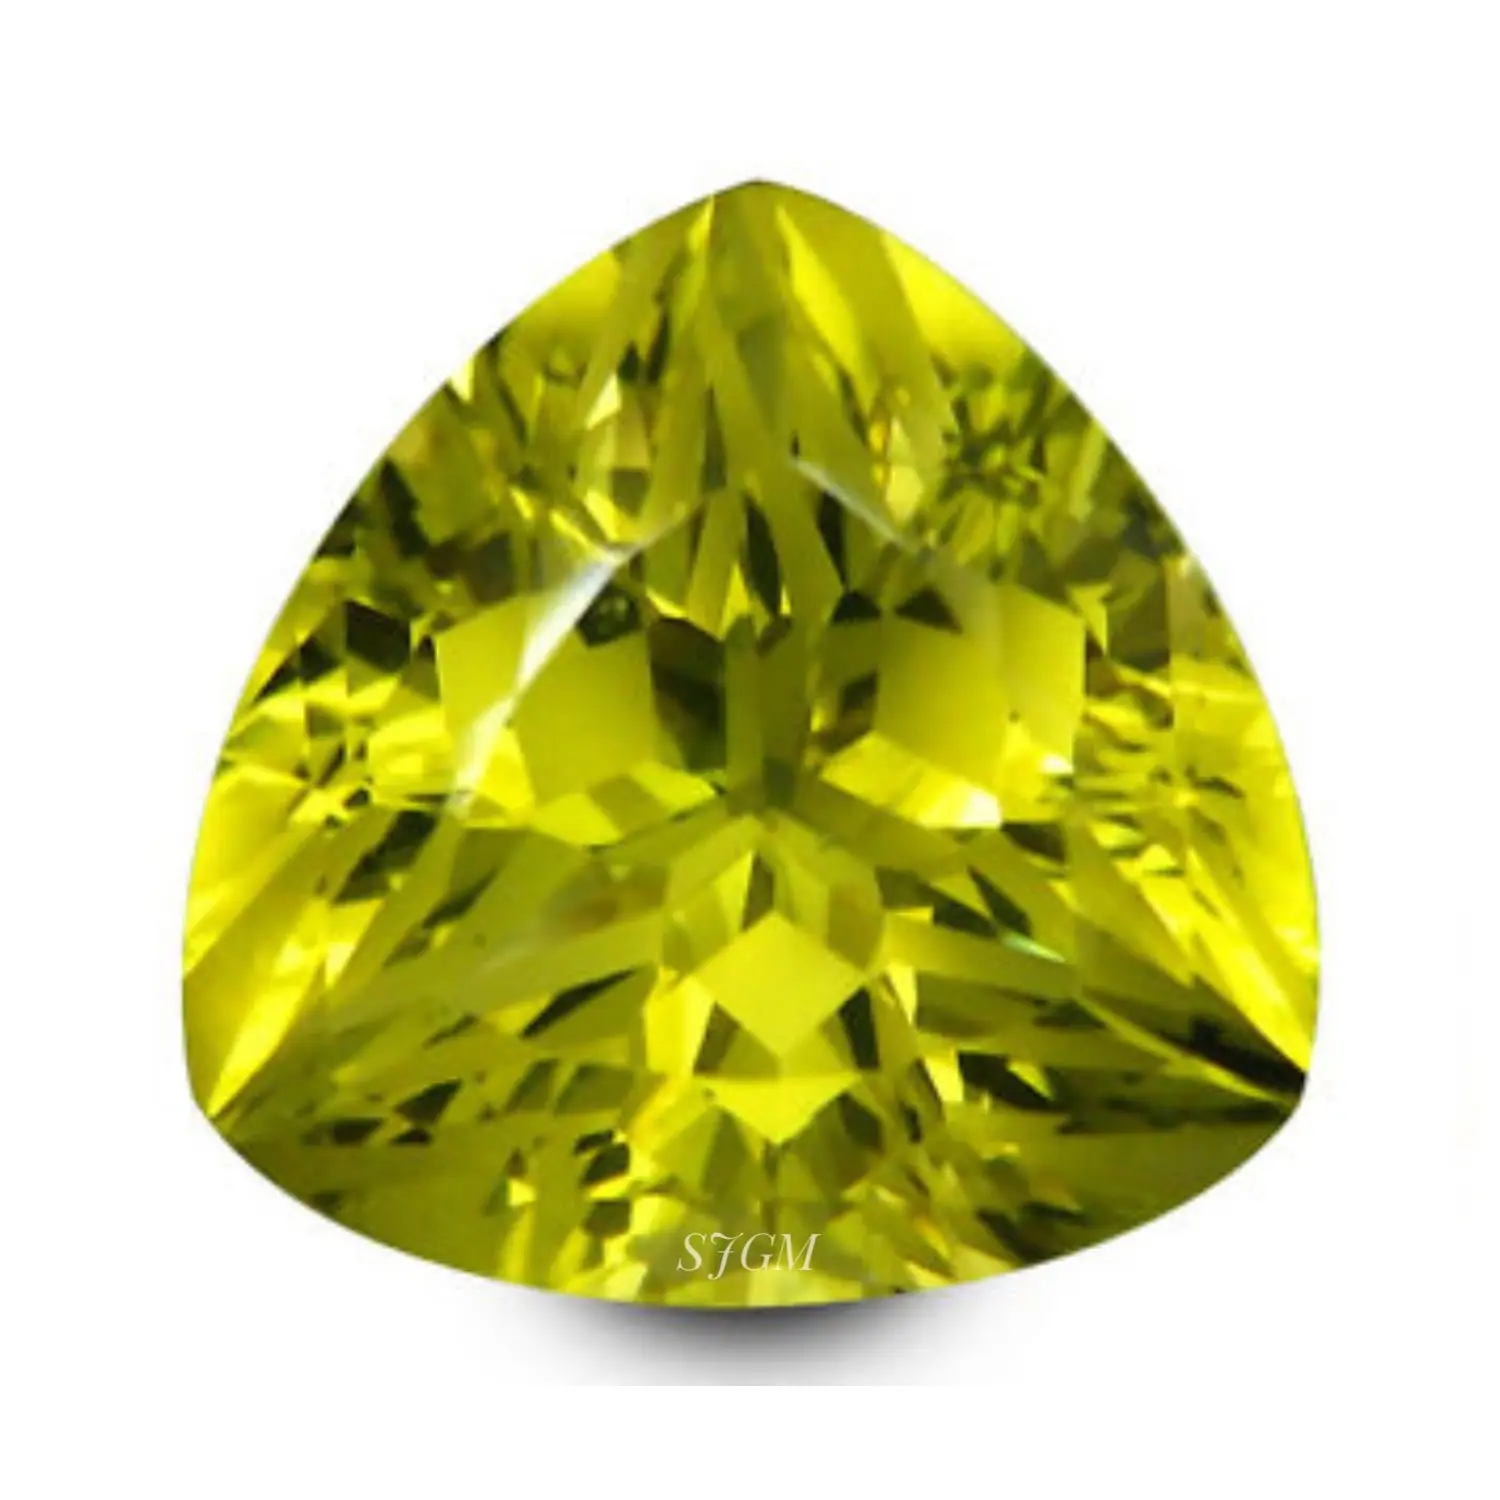 "4mm Trillion Cut Natural GREEN GOLD LEMON QUARTZ" Precio de fábrica al por mayor Piedra preciosa suelta facetada de alta calidad por pieza | IGI